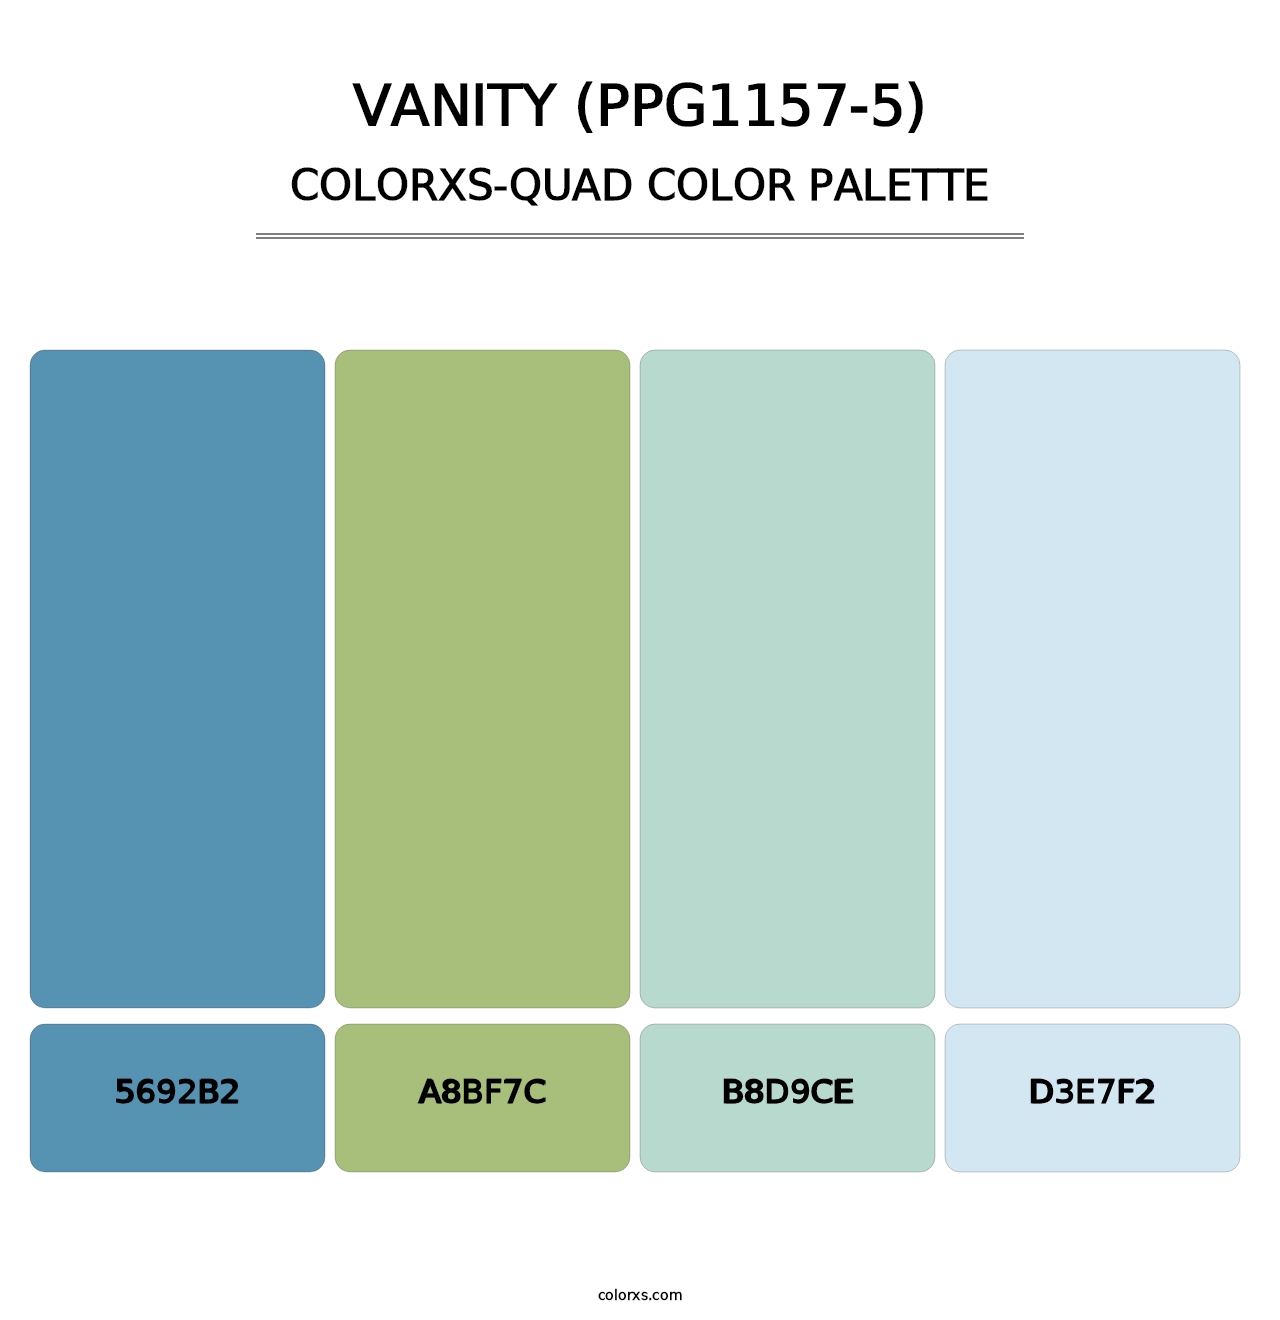 Vanity (PPG1157-5) - Colorxs Quad Palette